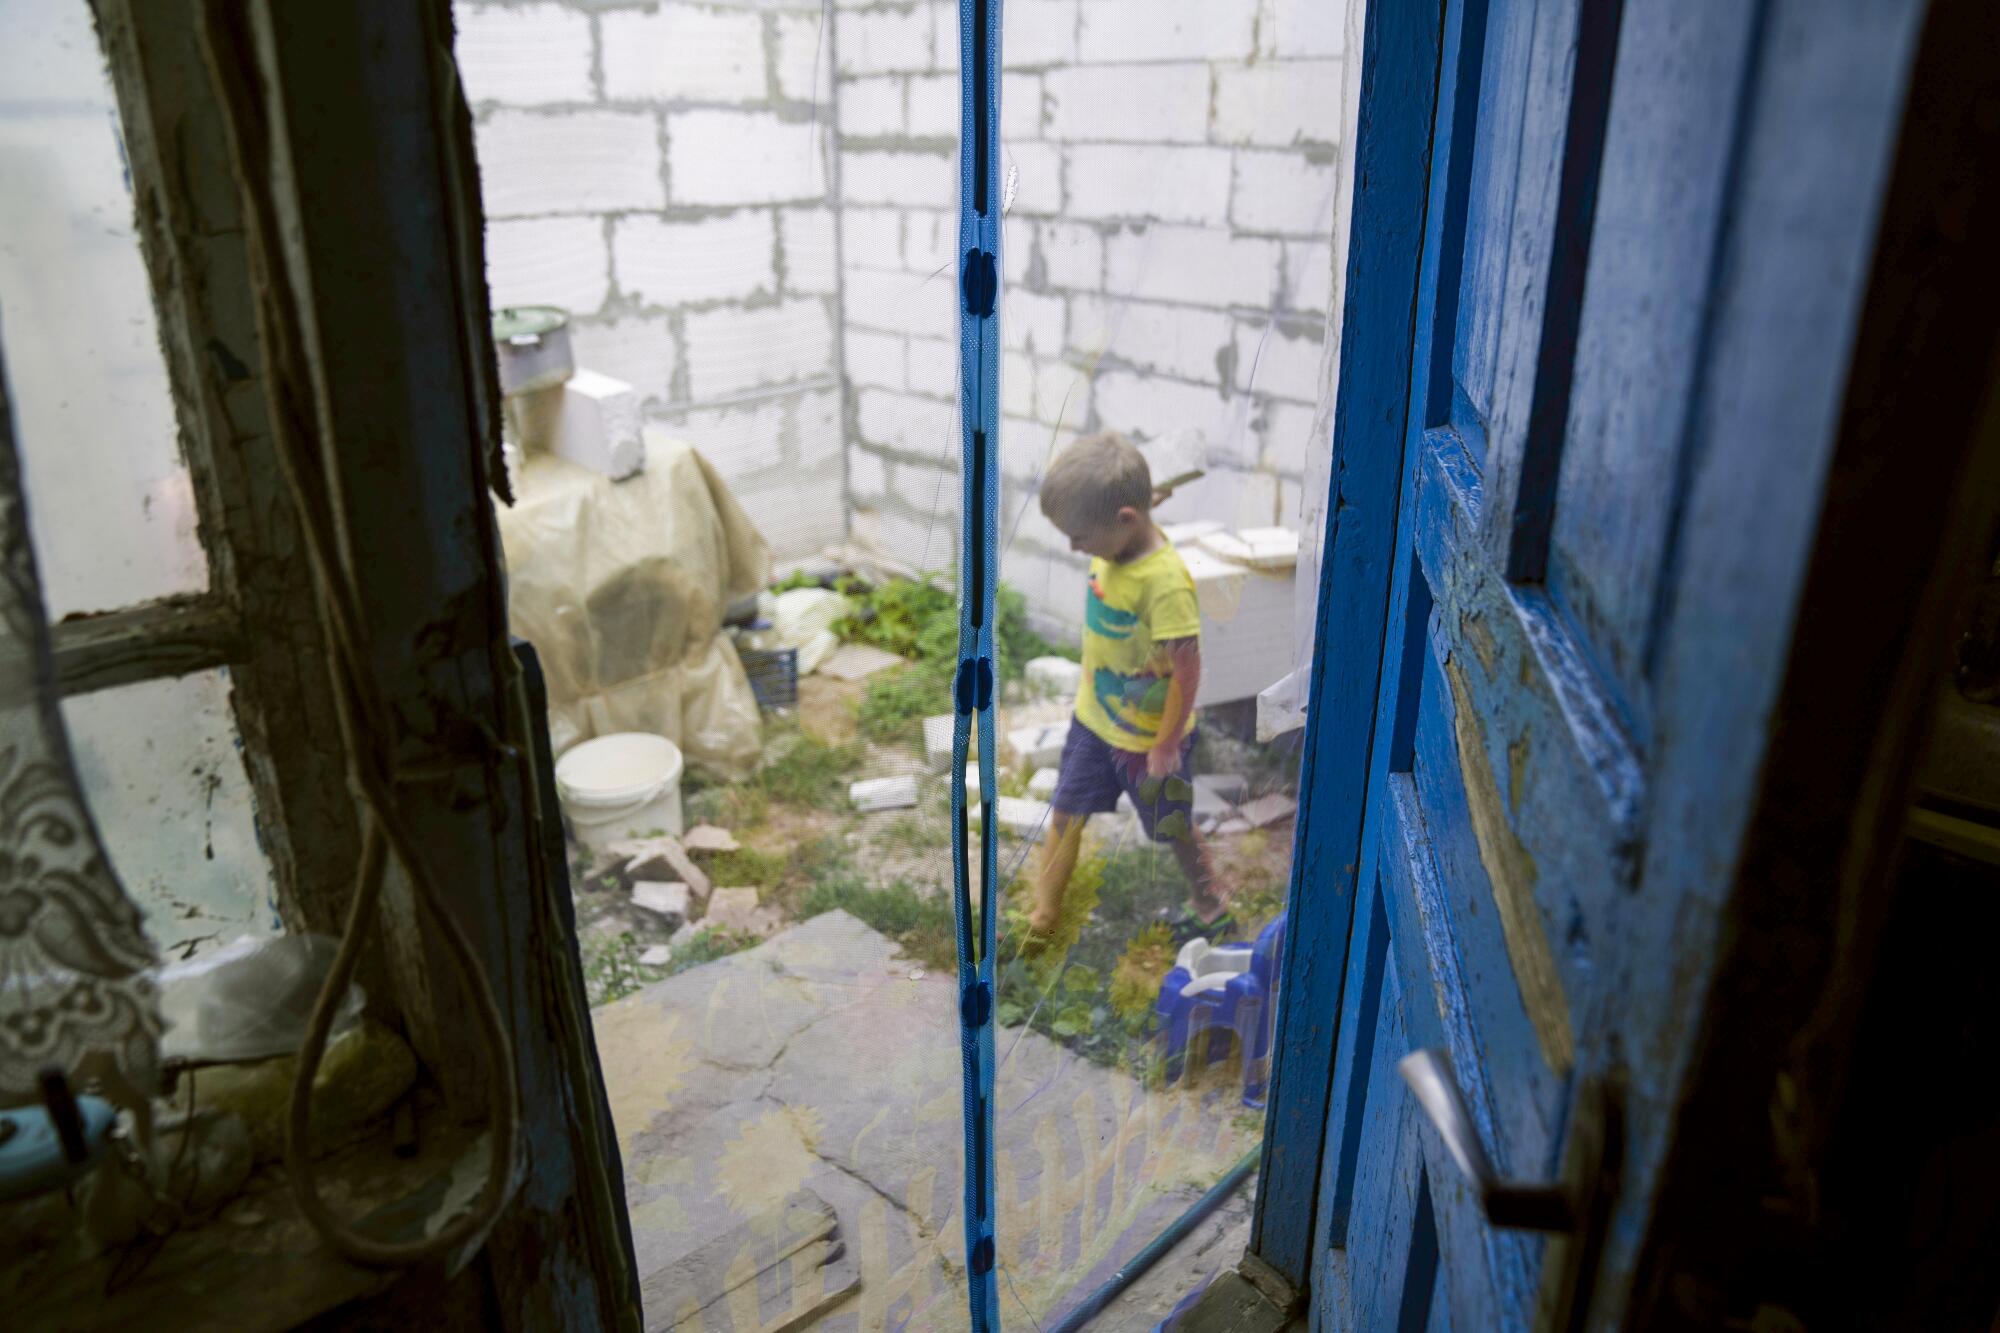 A boy is seen in a yard through a door.